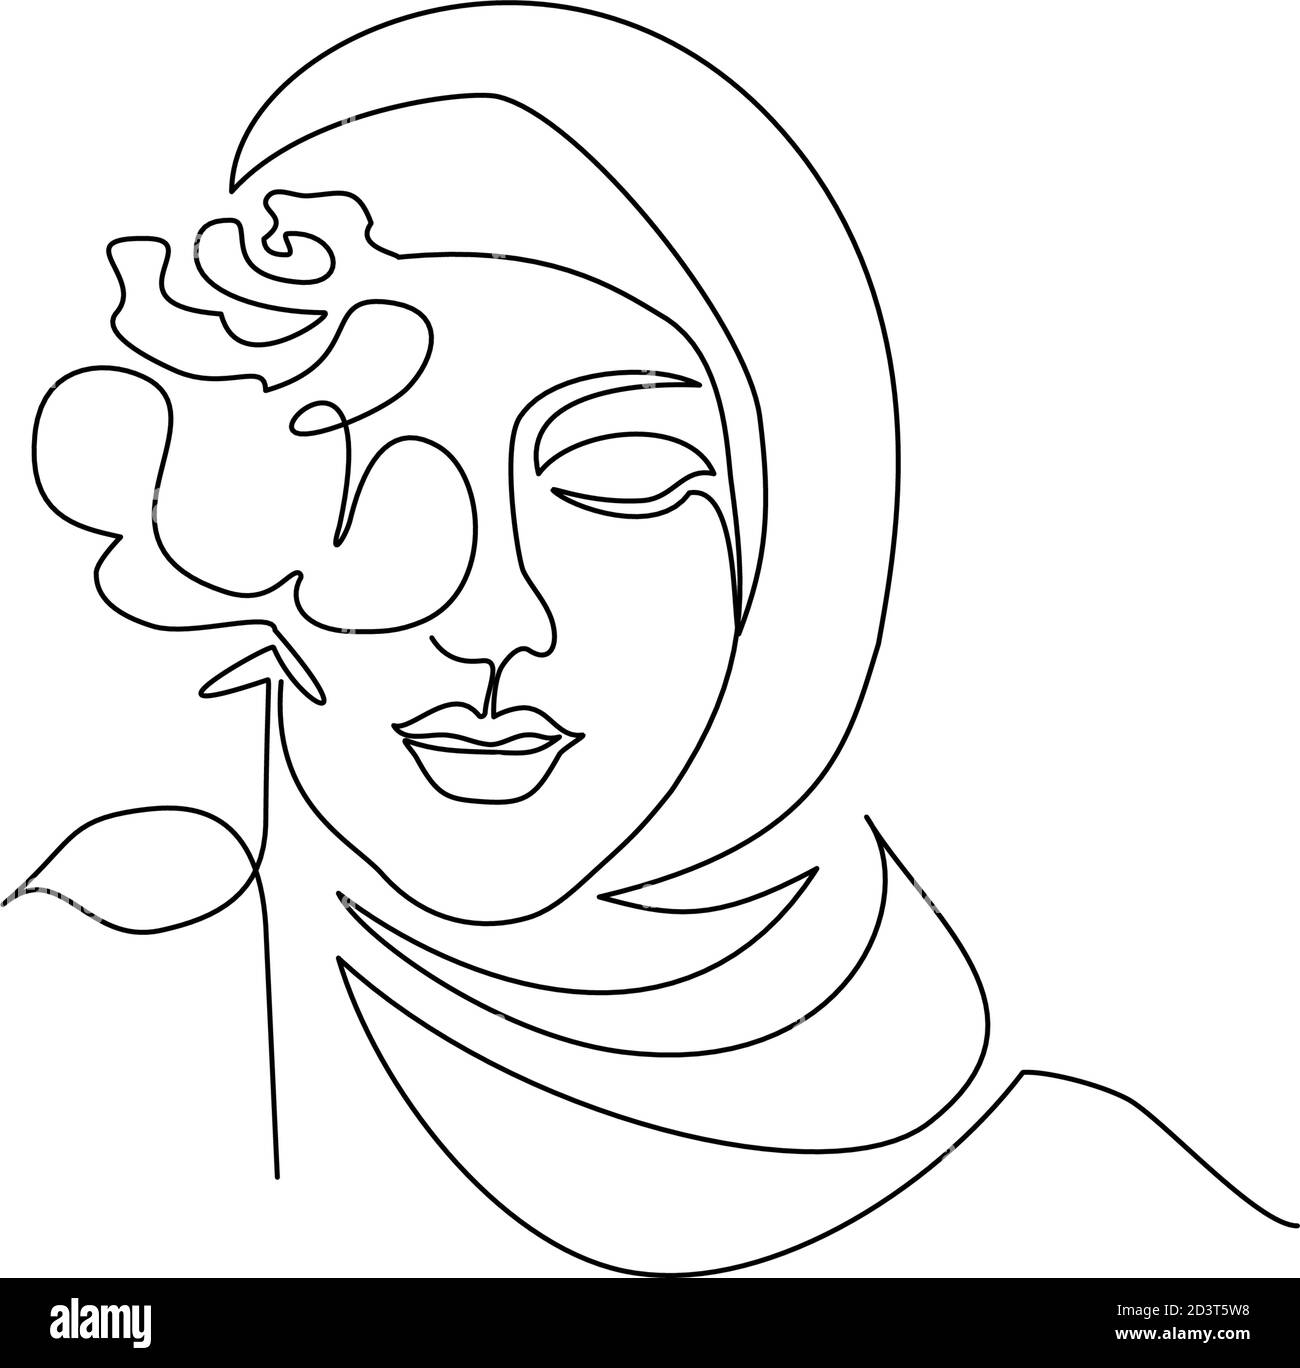 Junge glückliche Frau in Hijab mit Blumen auf ihrem Gesicht. Fortlaufende eine-Linie-Zeichnung. Vektorgrafik Stock Vektor